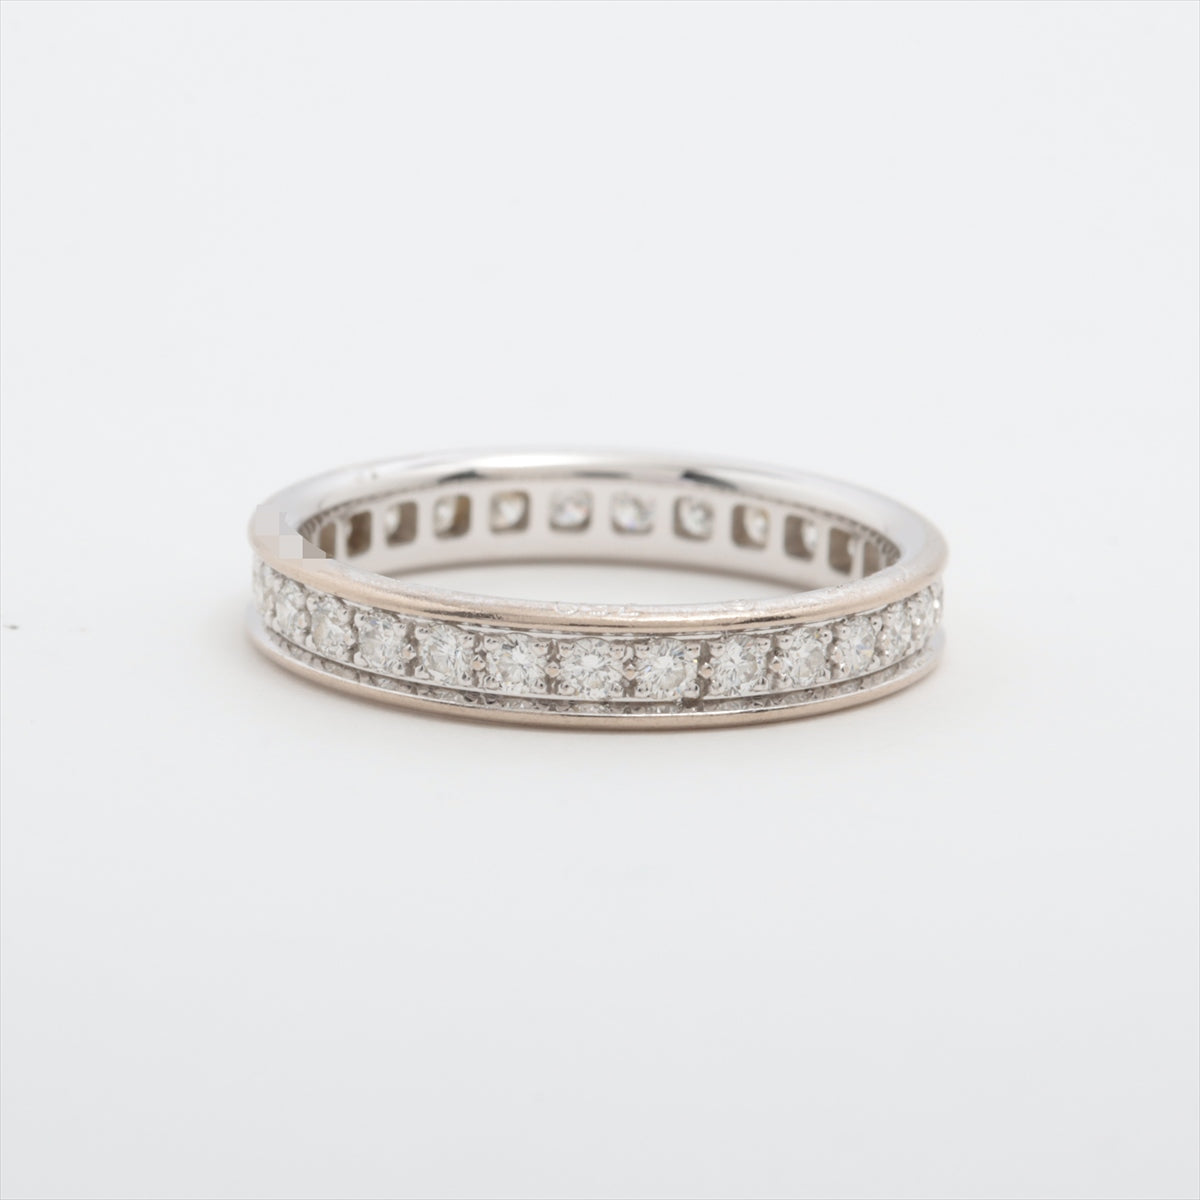 Cartier Valerie Full Ethanity Diamond Ring 750 (WG) 2.7g